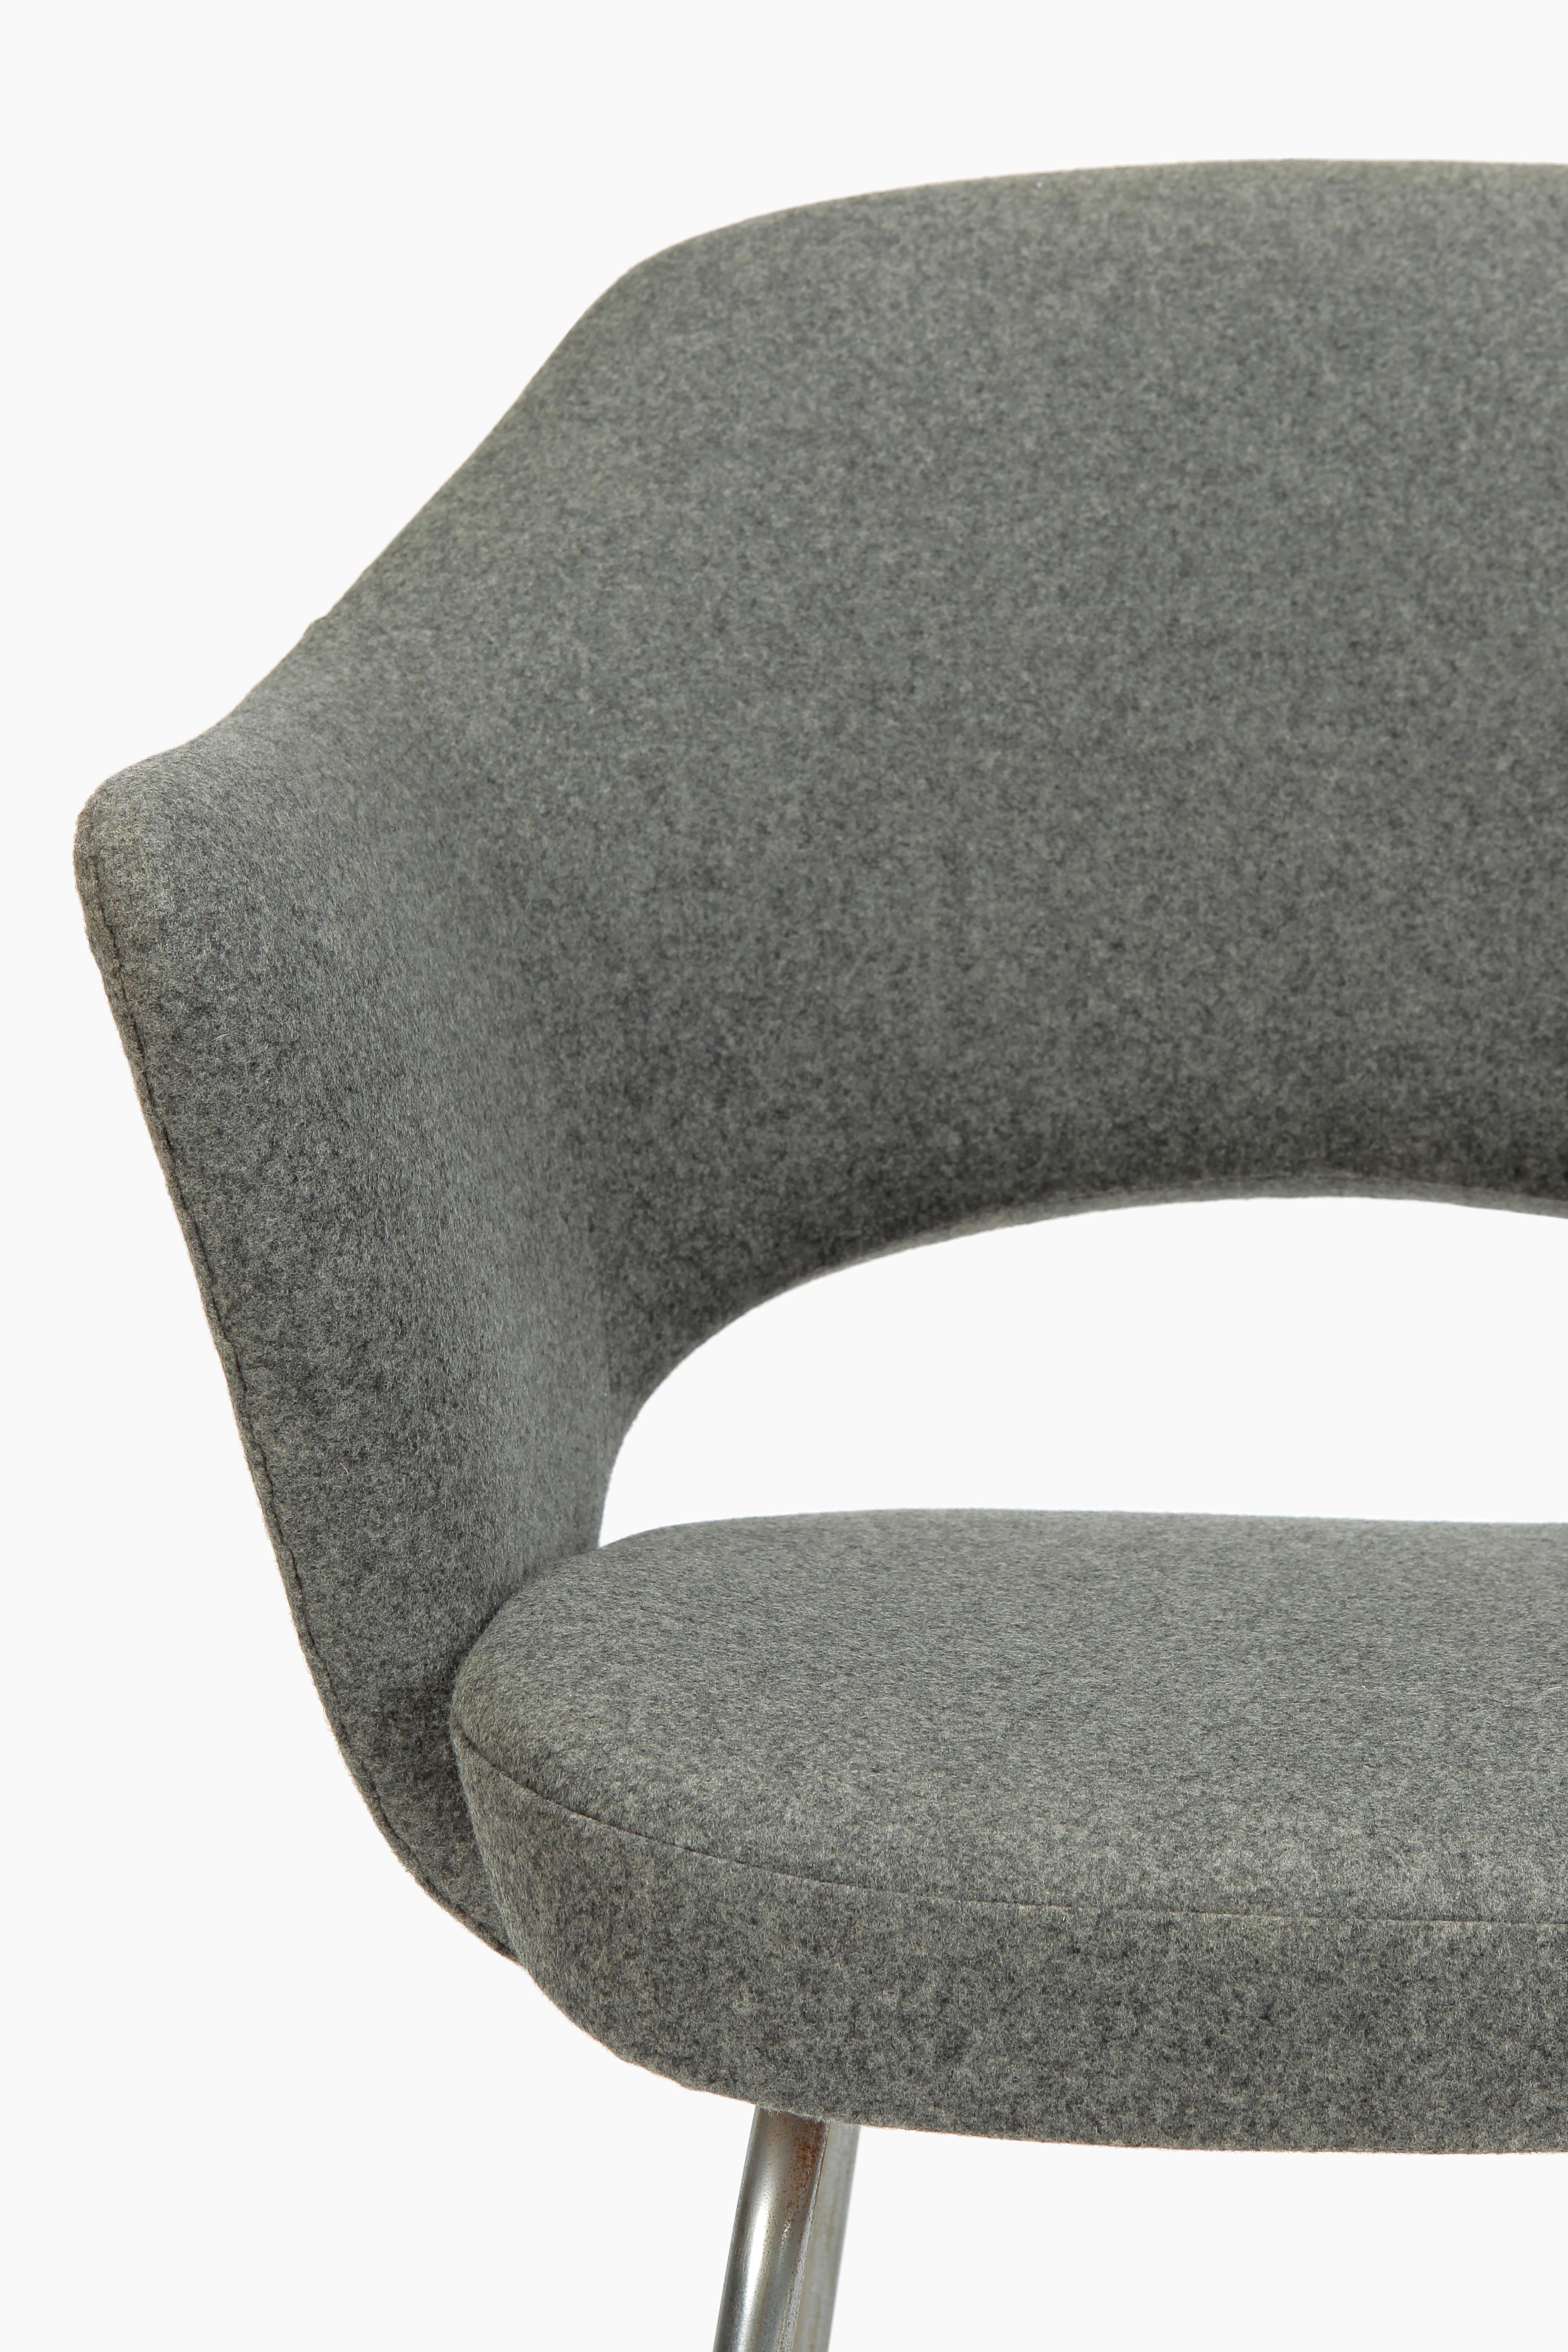 Eero Saarinen Chair Knoll International, 1960s 1